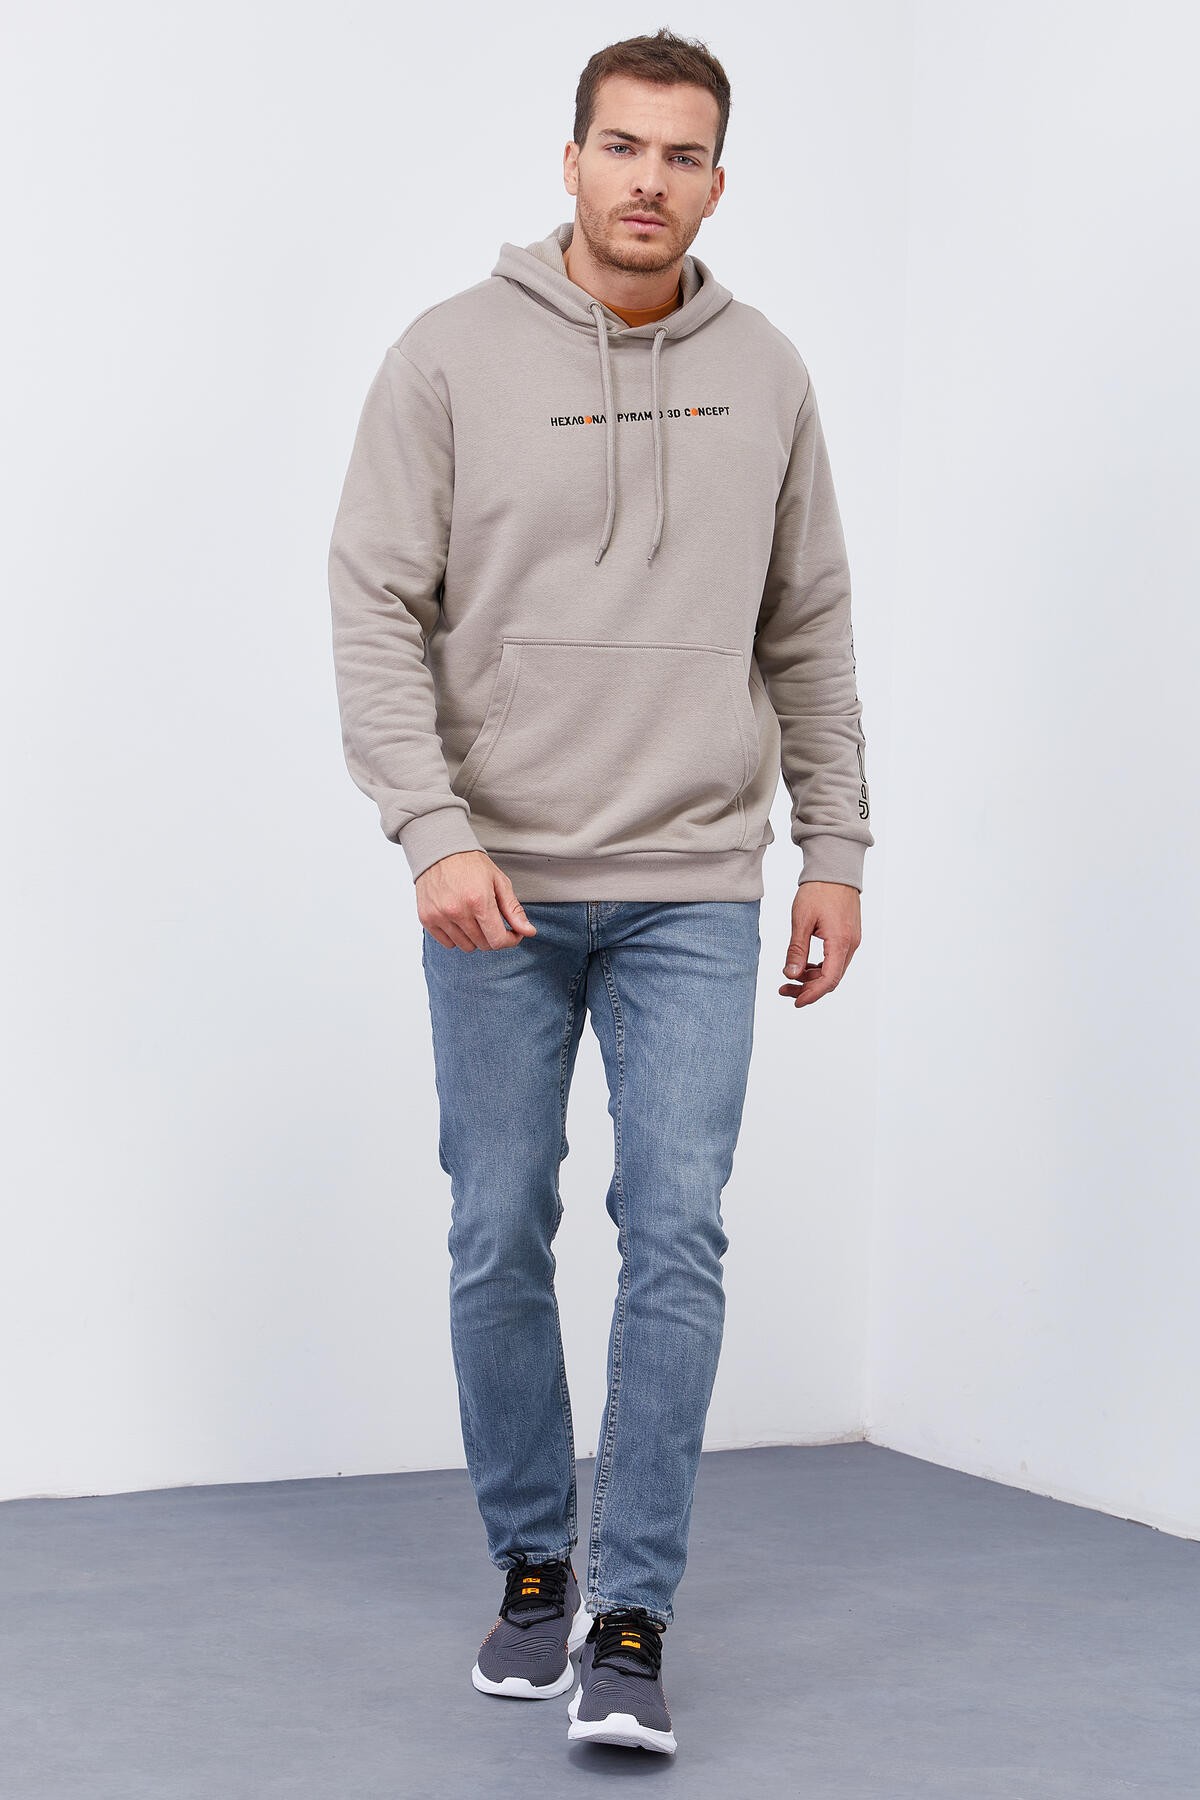 Koyu Bej Kol Baskılı Kapüşonlu Rahat Form Erkek Sweatshirt - 88038